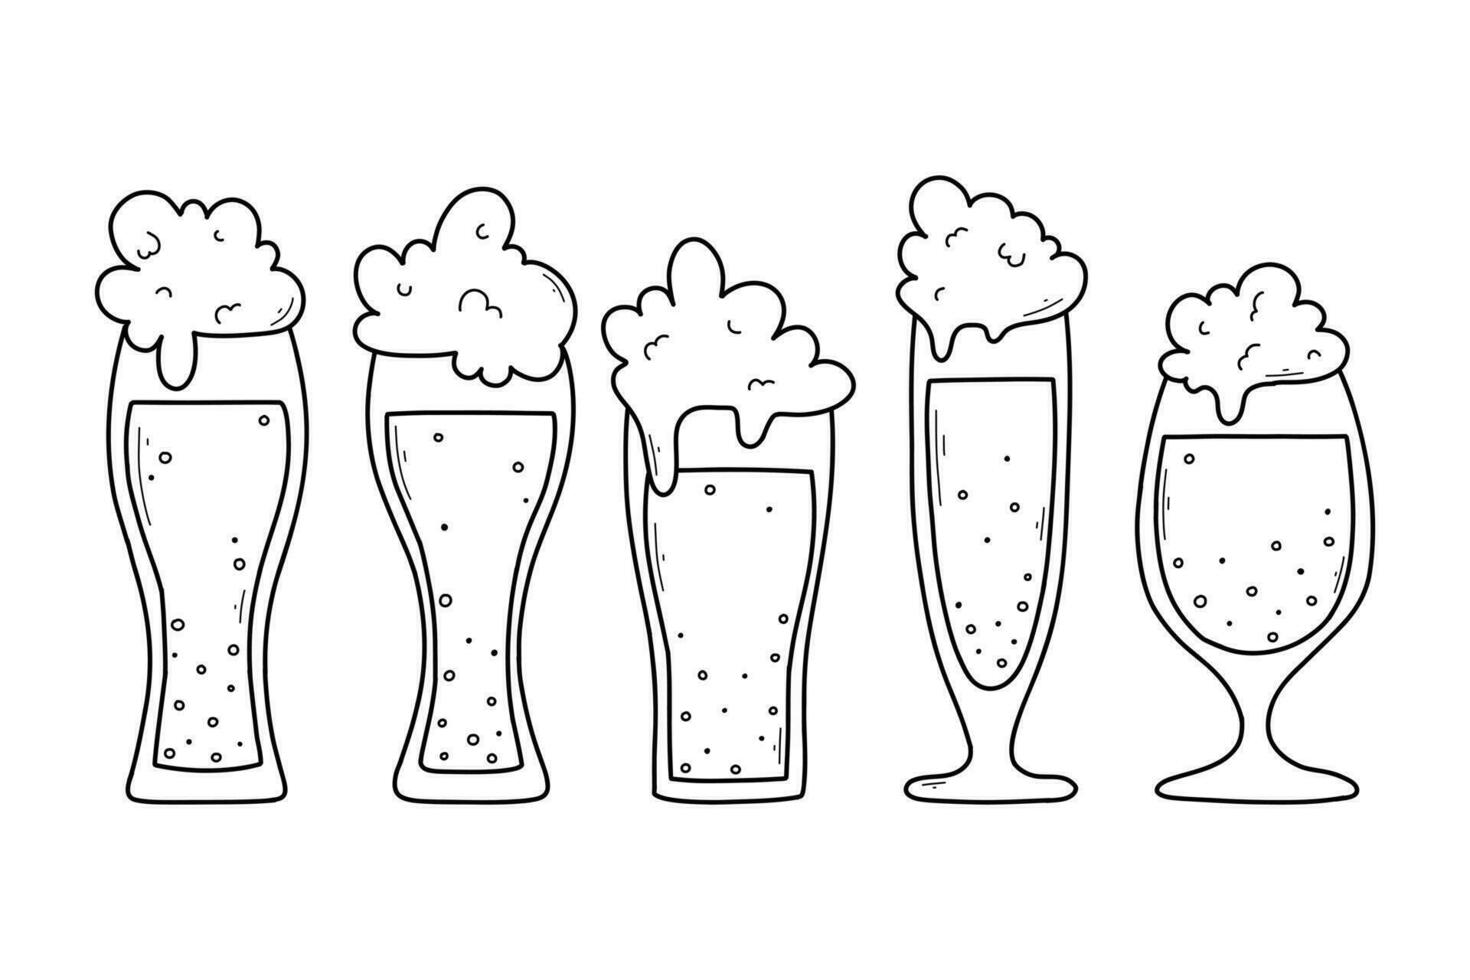 reeks van bril met bier in tekening stijl. vector illustratie. lineair verzameling van schuimend bier.